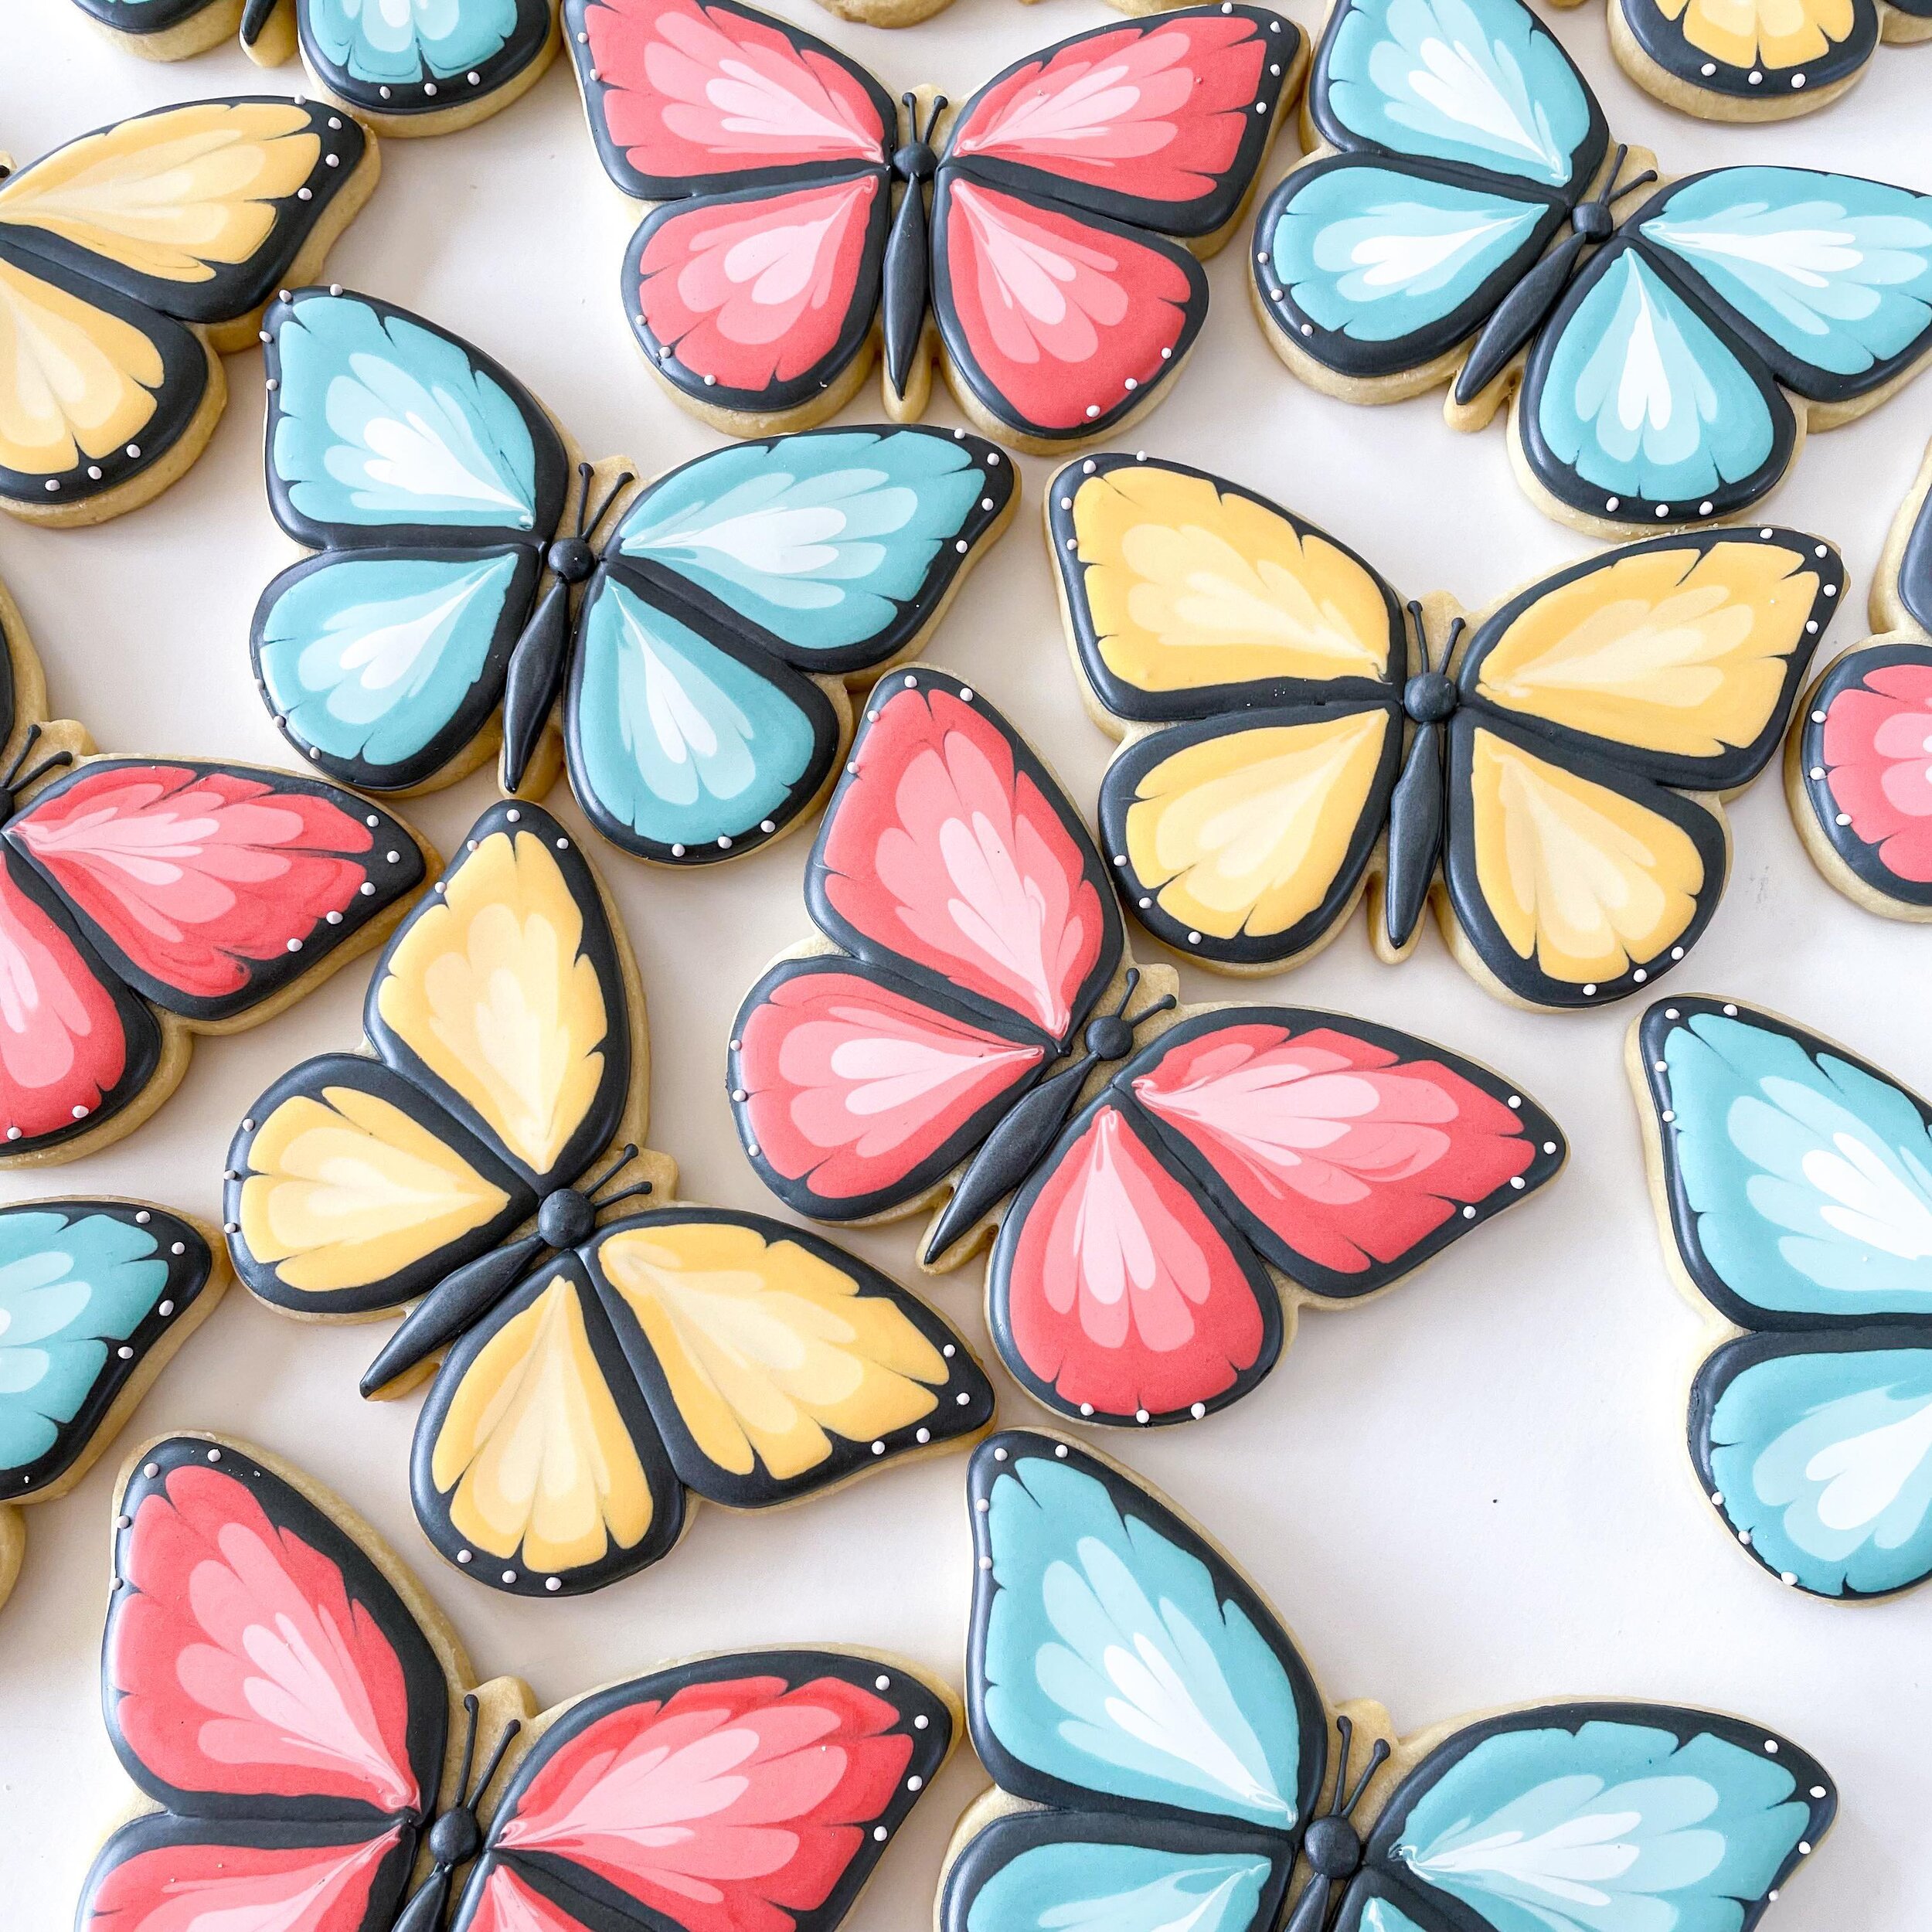 Happy Easter, cookie friends! 

#butterflycookies #springcookies #royalicing